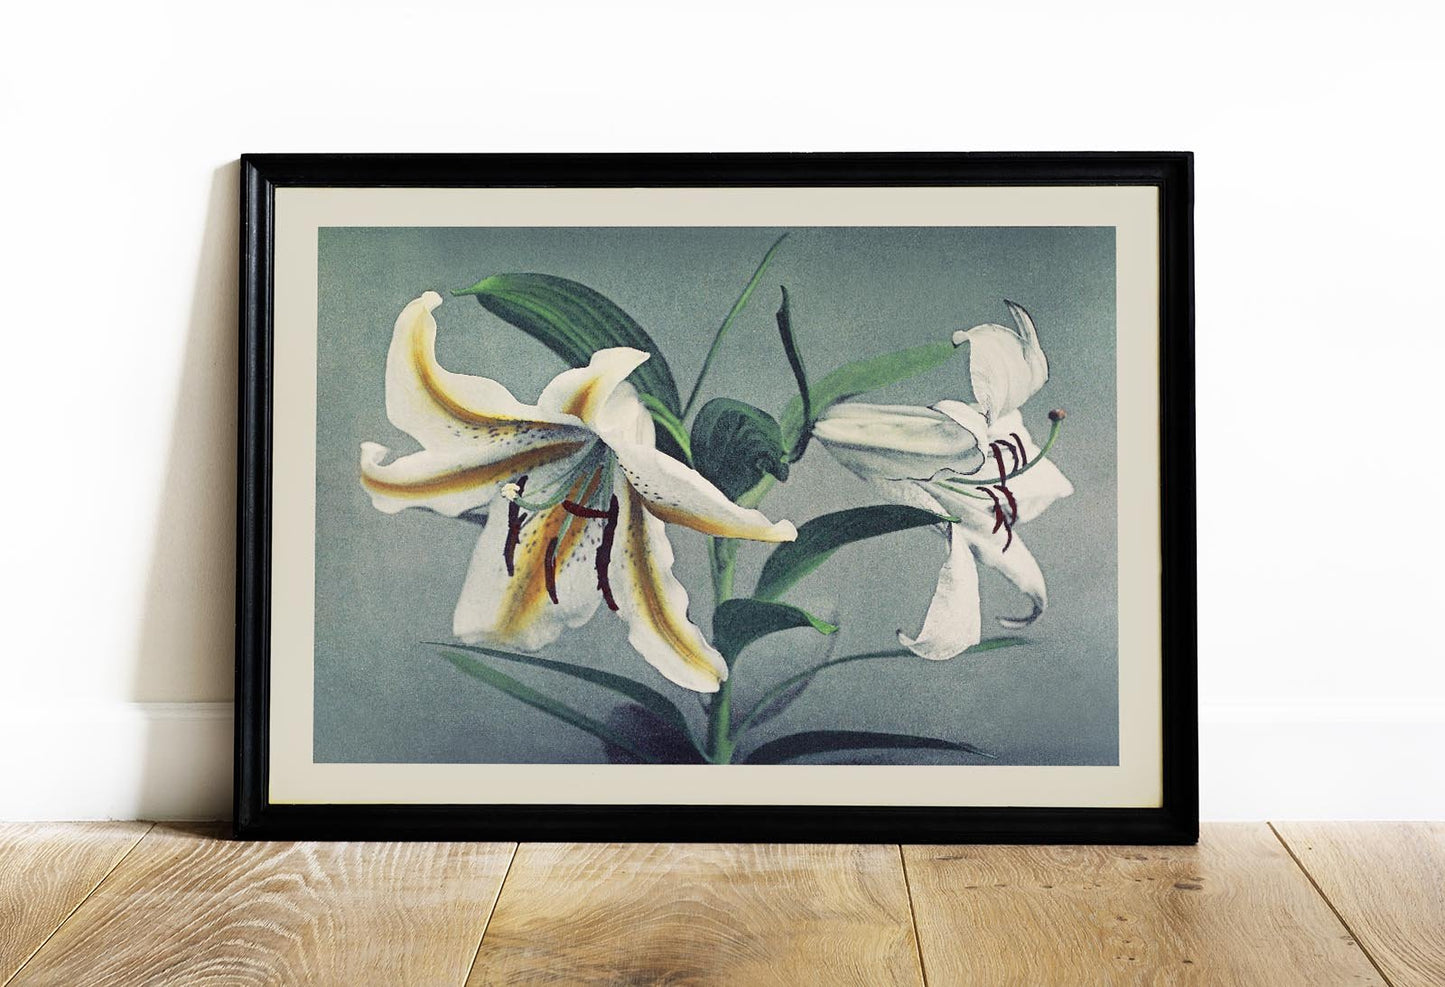 White Lily by Ogawa Kazumasa